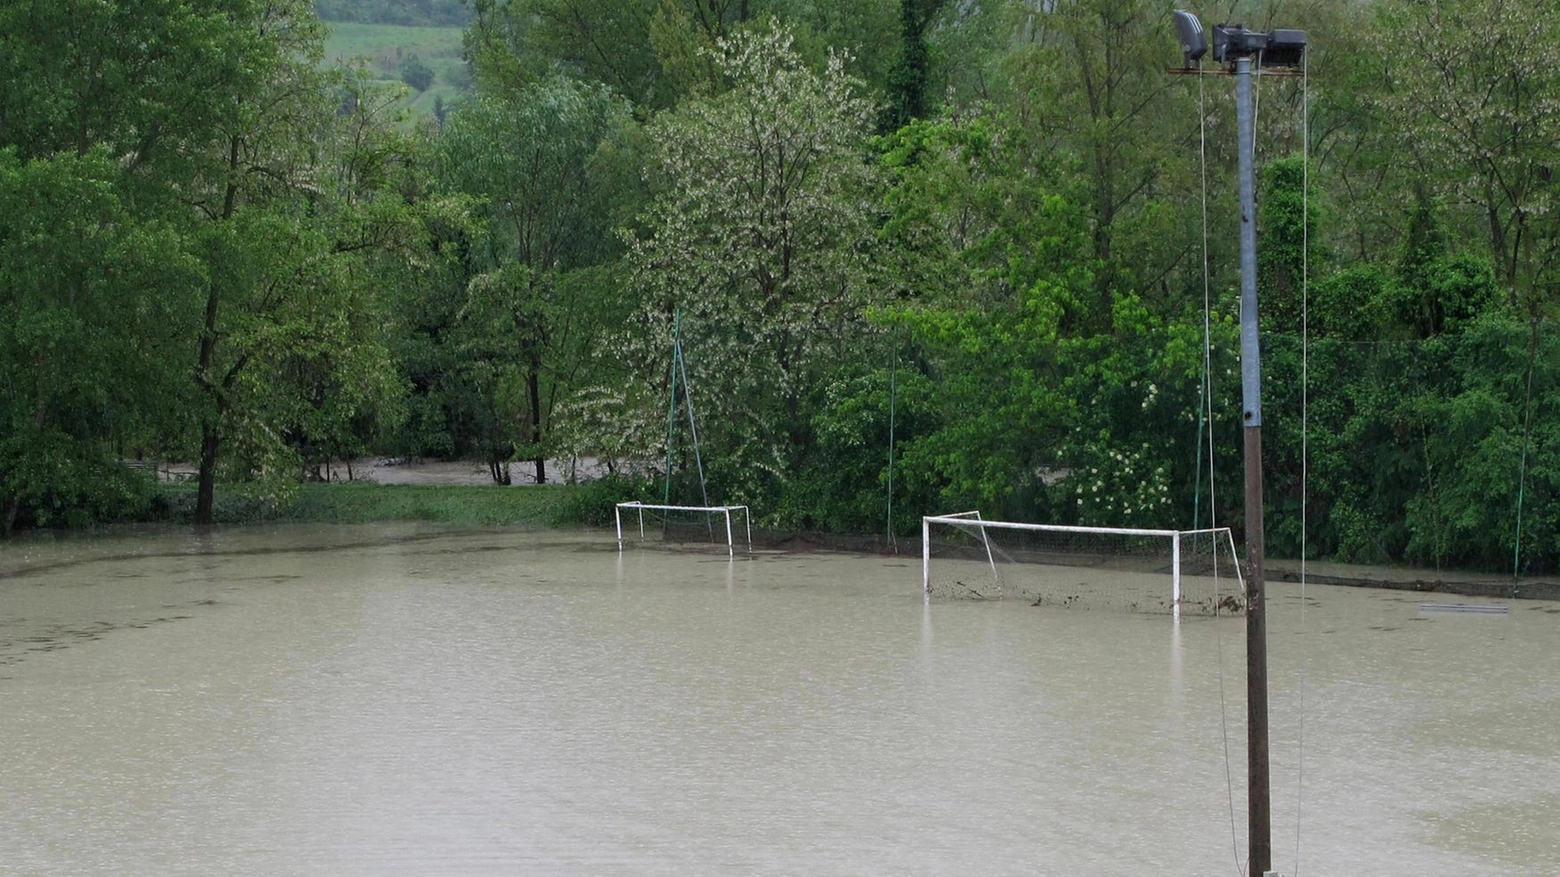 Lo stato degli impianti   "I danni dell’alluvione  non fermeranno lo sport"